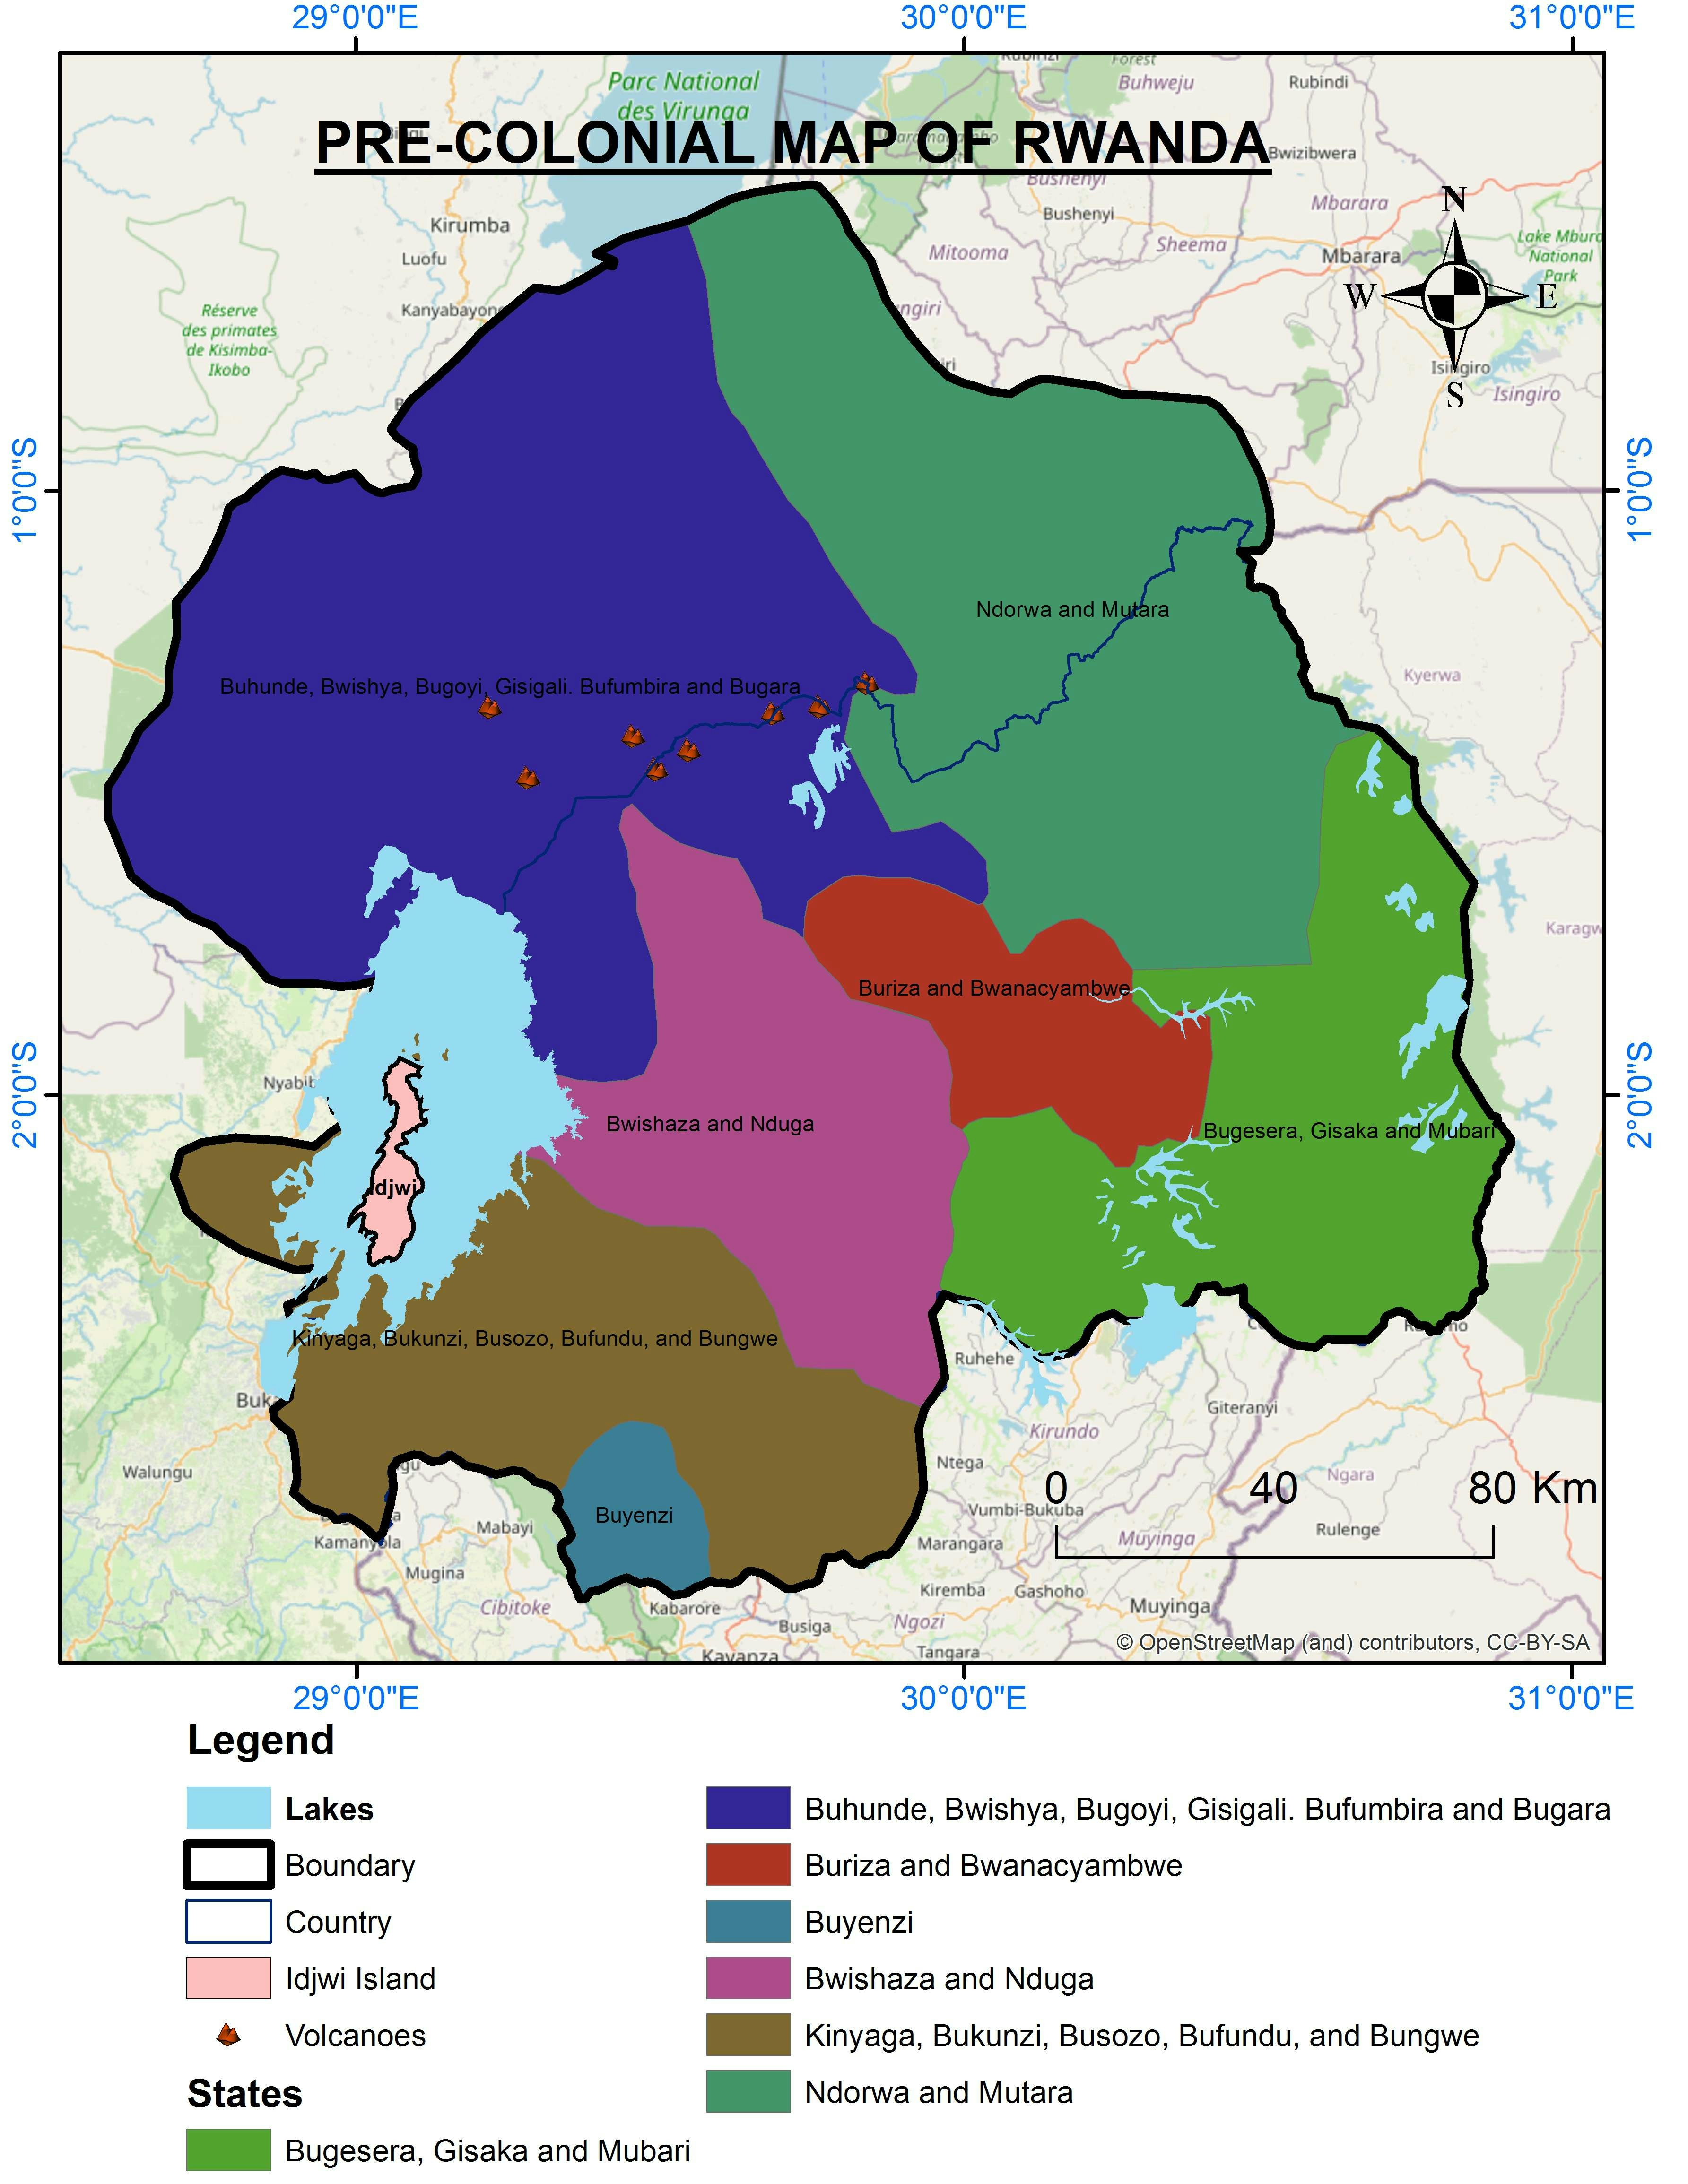 PRE-COLONIAL BOUNDARY MAP OF RWANDA